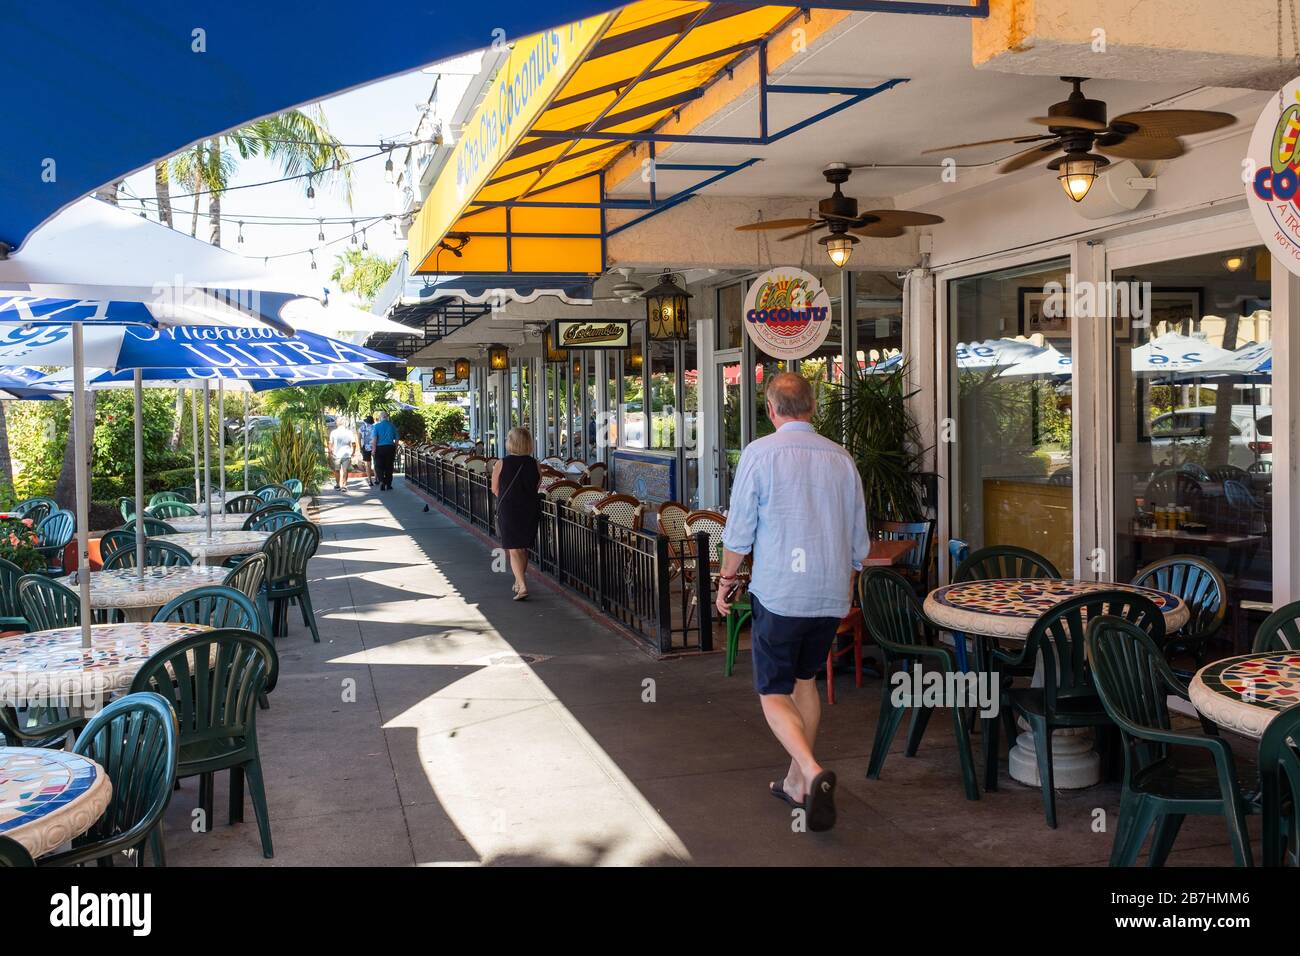 Les restaurants de St Armands Circle sur Lido Key à Sarasota, en Floride, commencent à voir les effets de COVID-19 comme les ventes commencent à ralentir. Banque D'Images